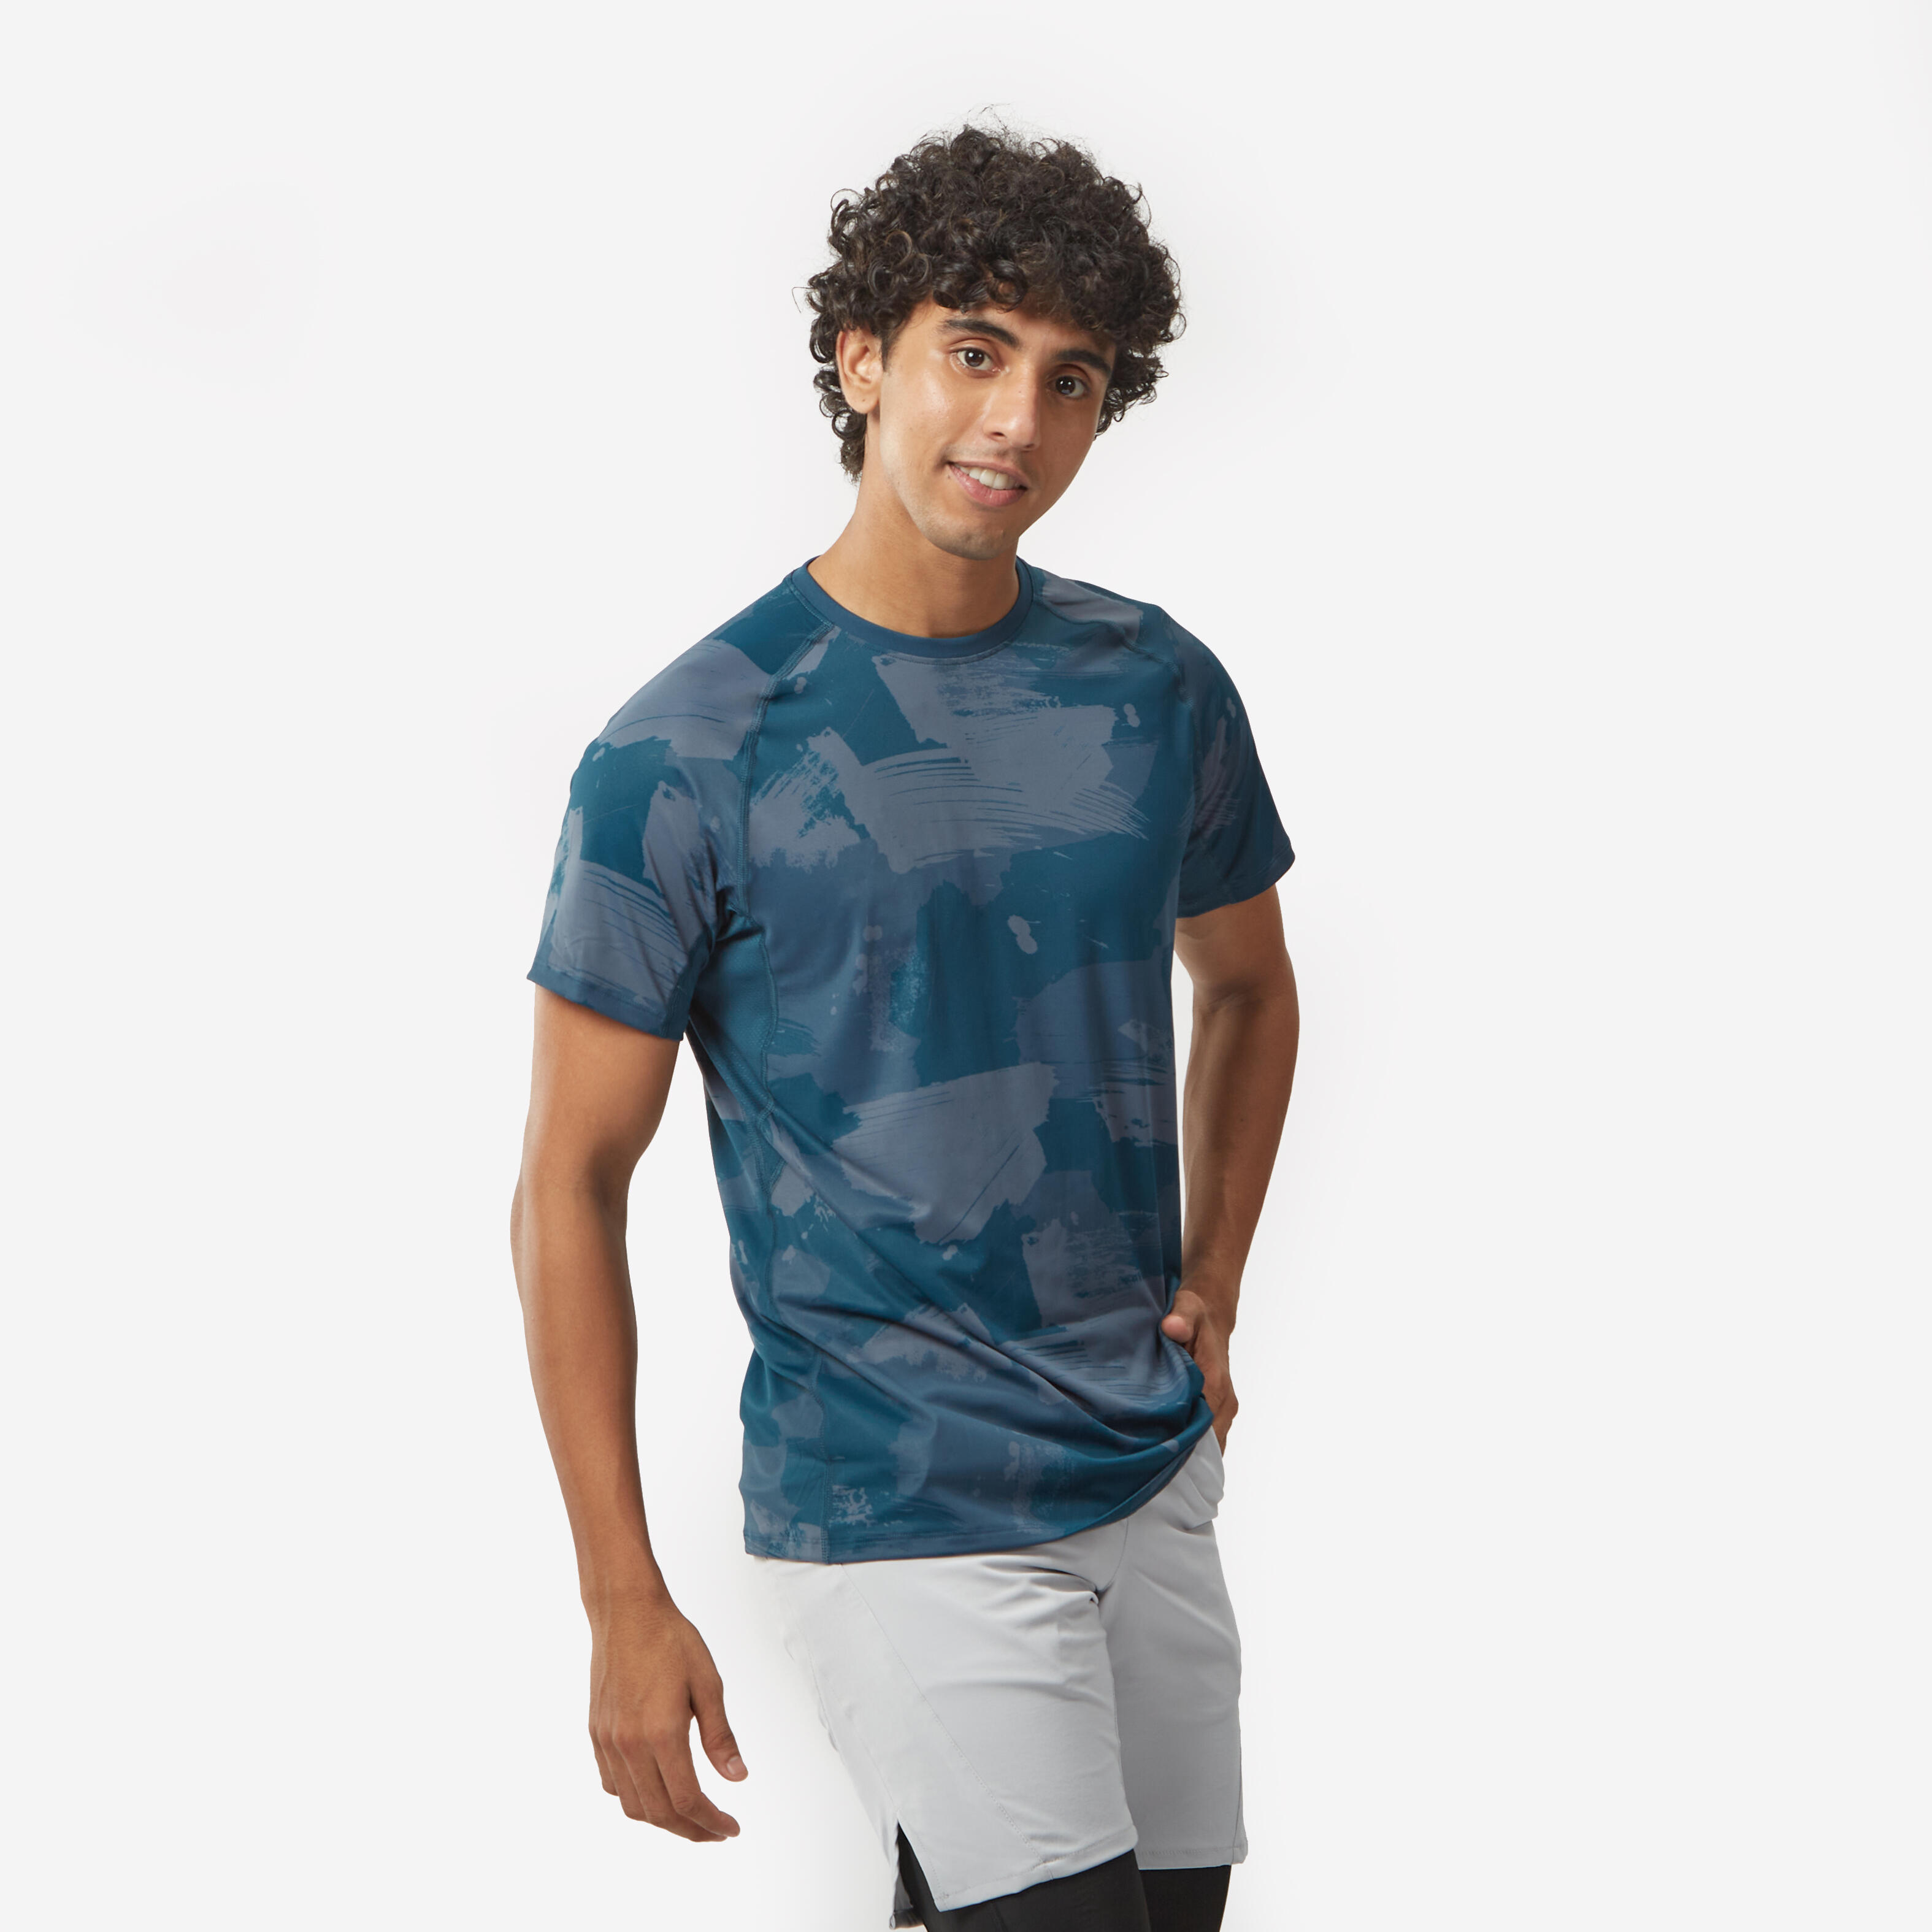 Men's T-Shirt For Gym Cotton Rich 100 - Blue